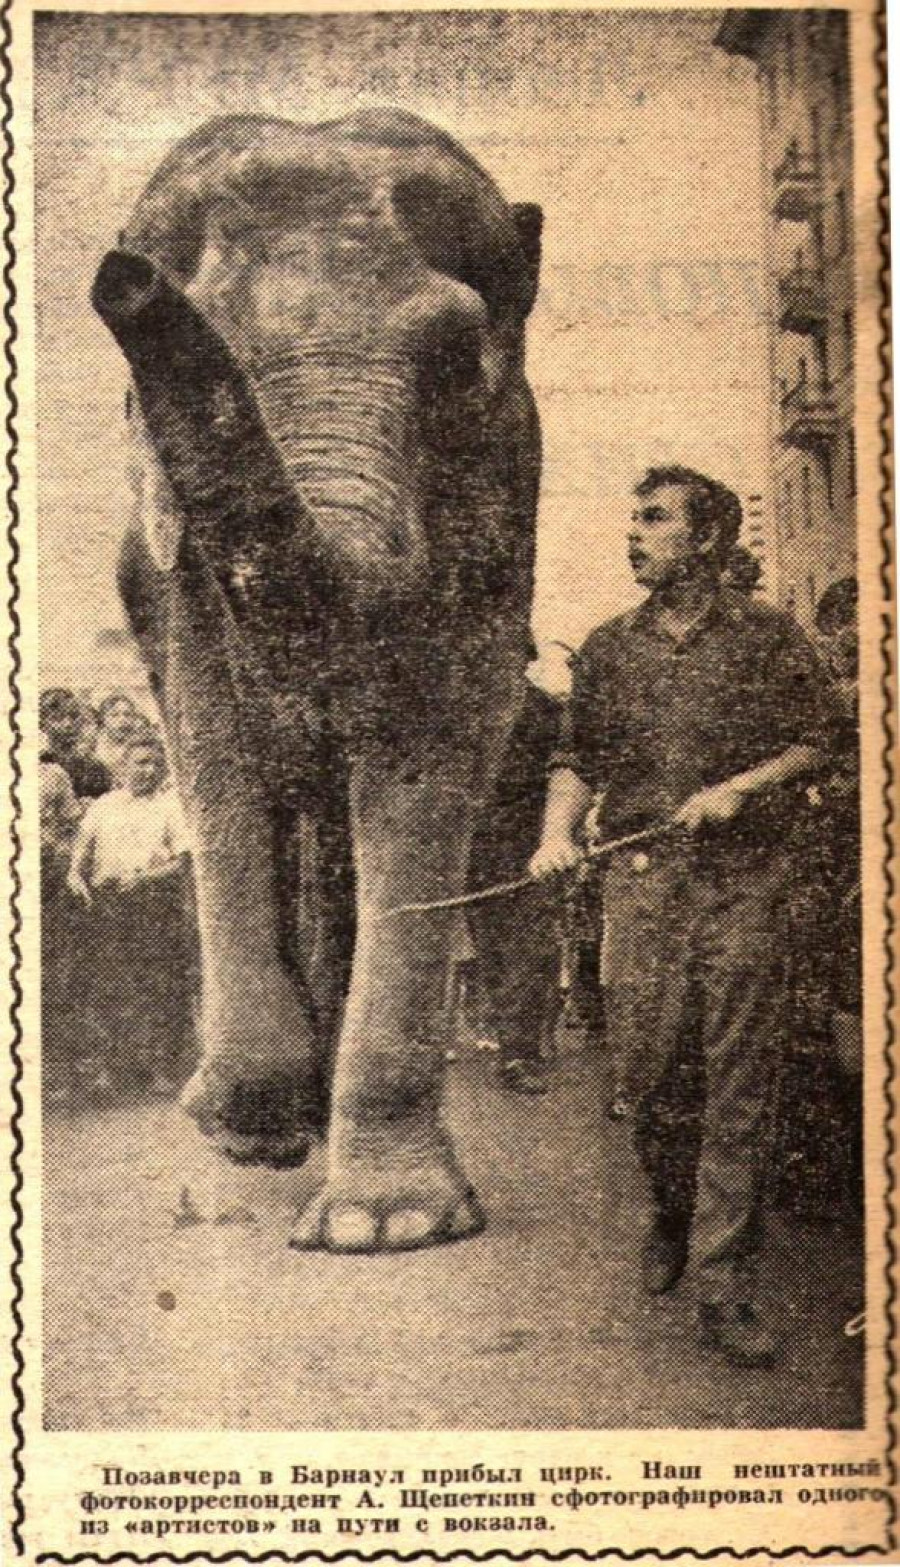 Слониха Катрин, самый крупный слон в стране, фото 1965 года.